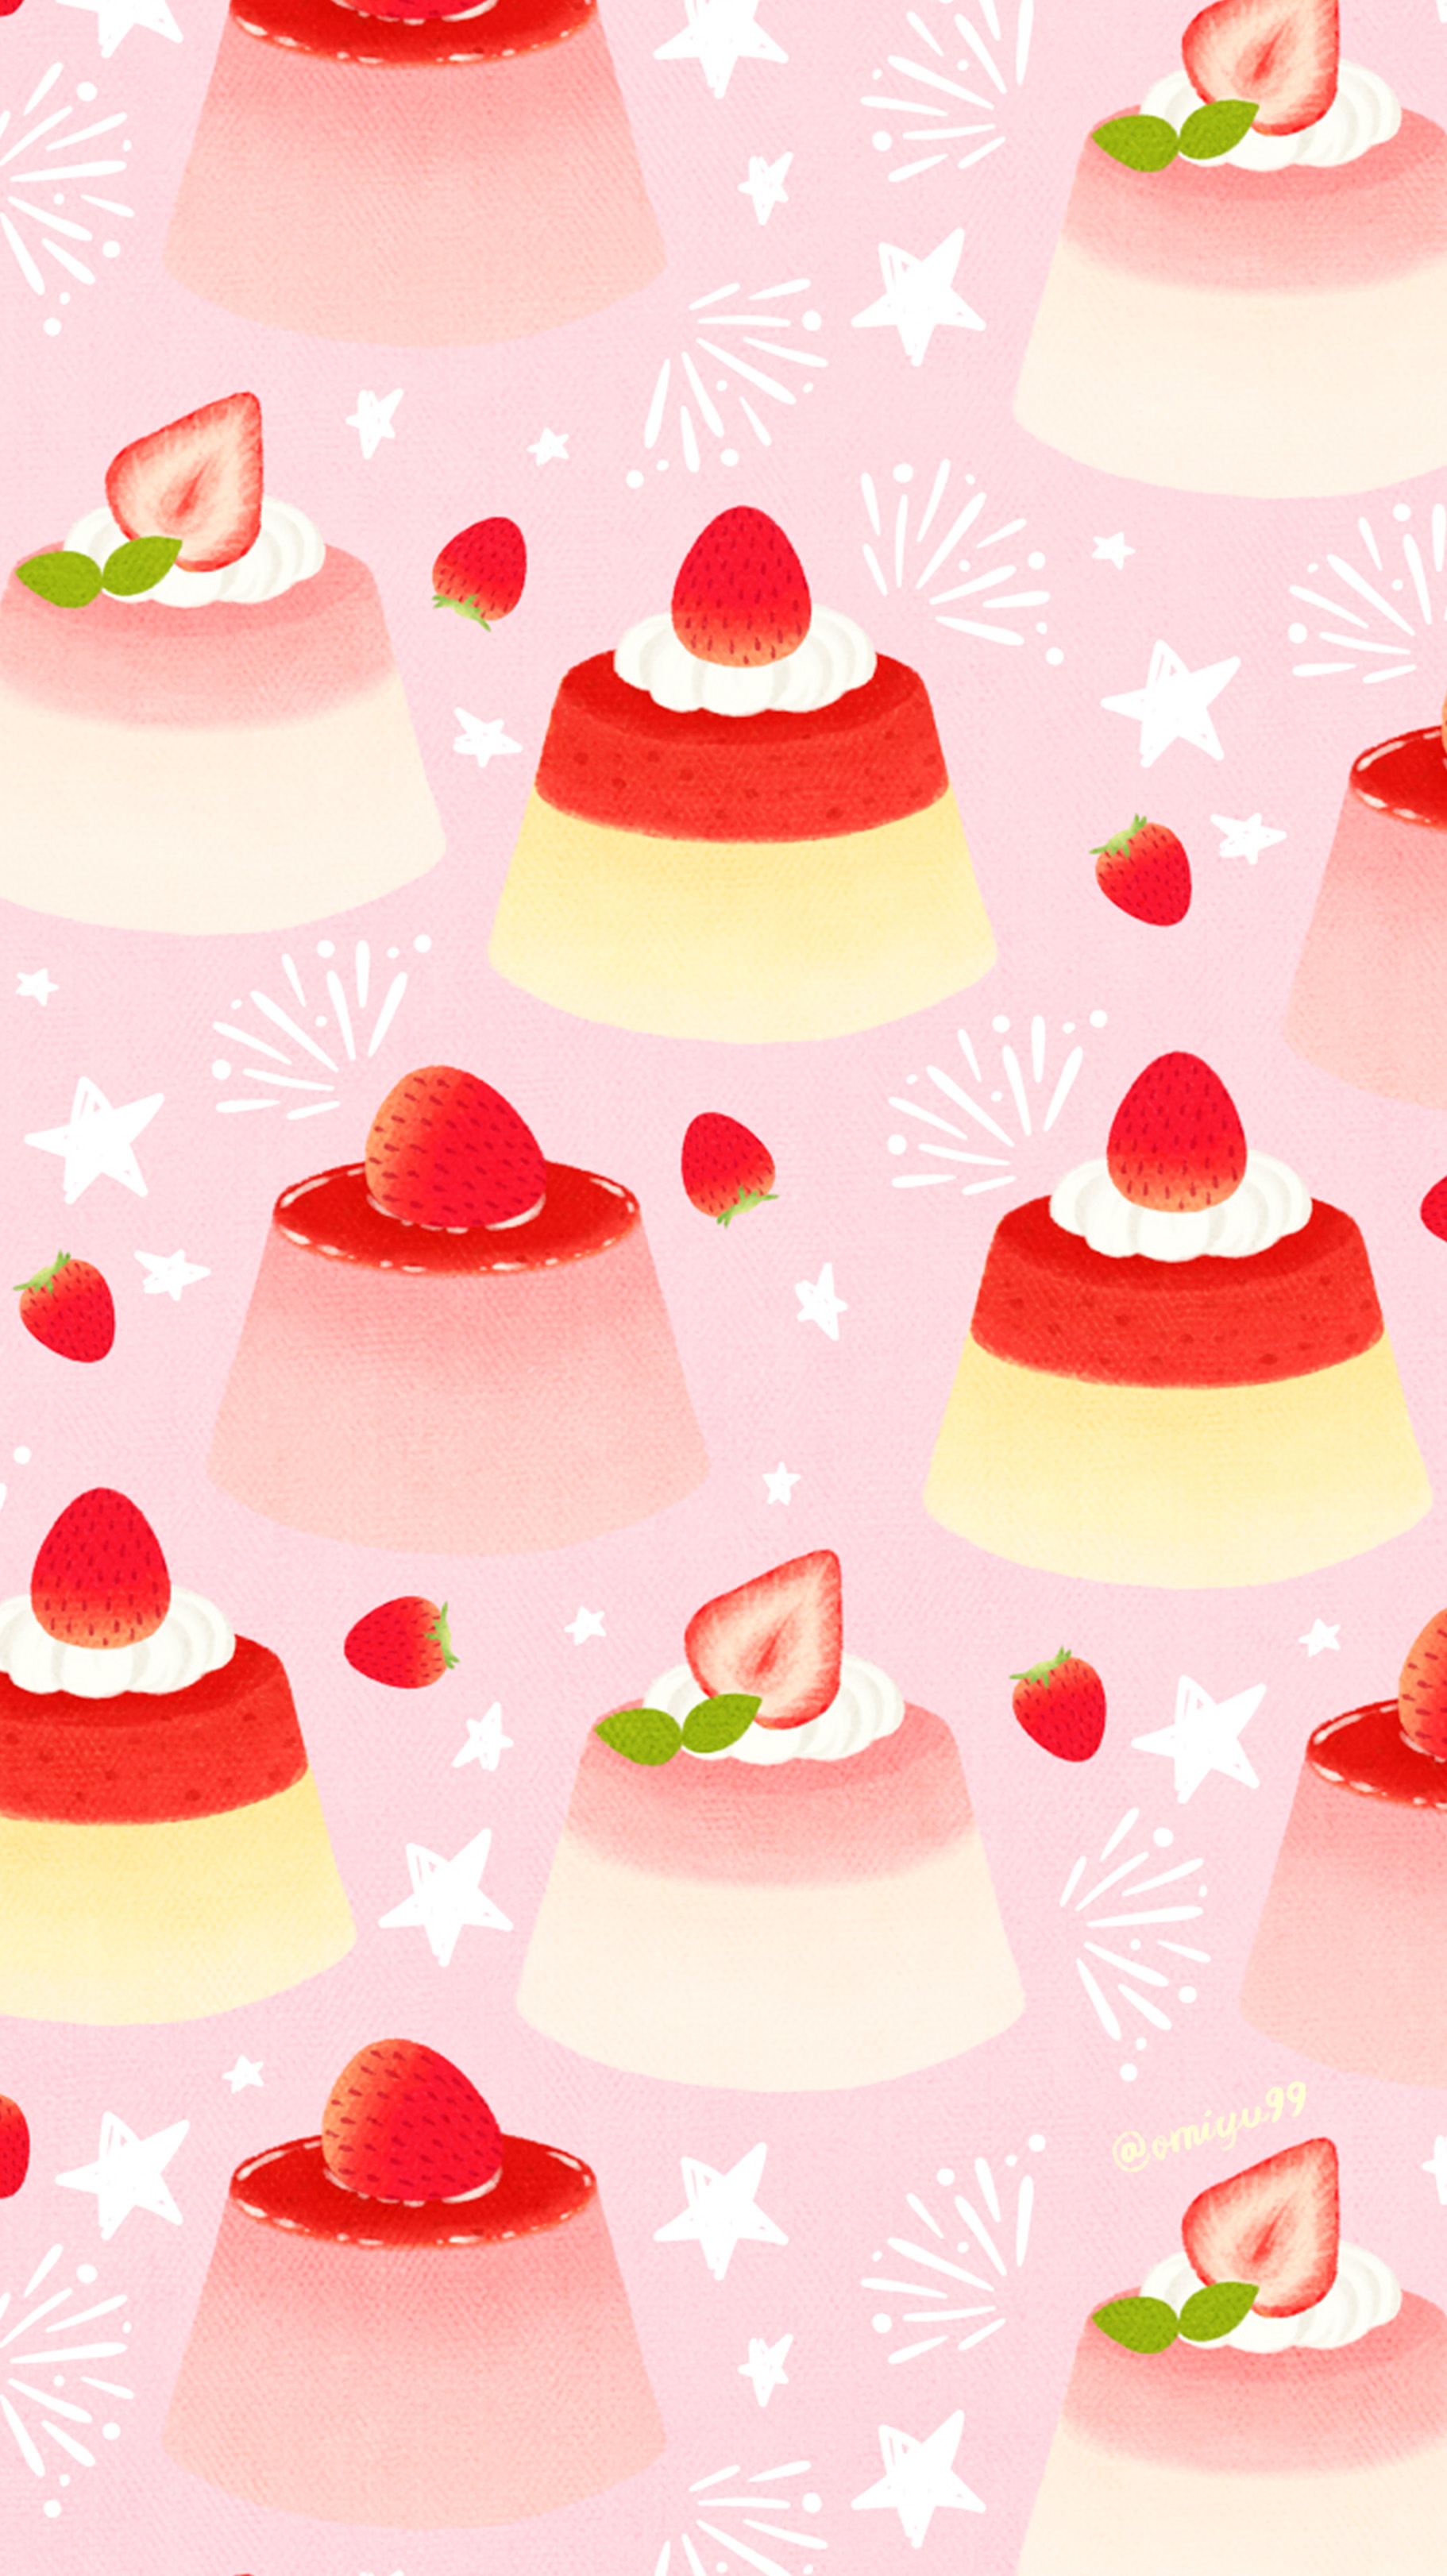 Twitter 上的 Omiyu いちごプリンな壁紙 Illust Illustration 壁紙 イラスト Iphone壁紙 プリン いちご 食べ物 Strawberry Pudding T Co Jbace8p78m Twitter